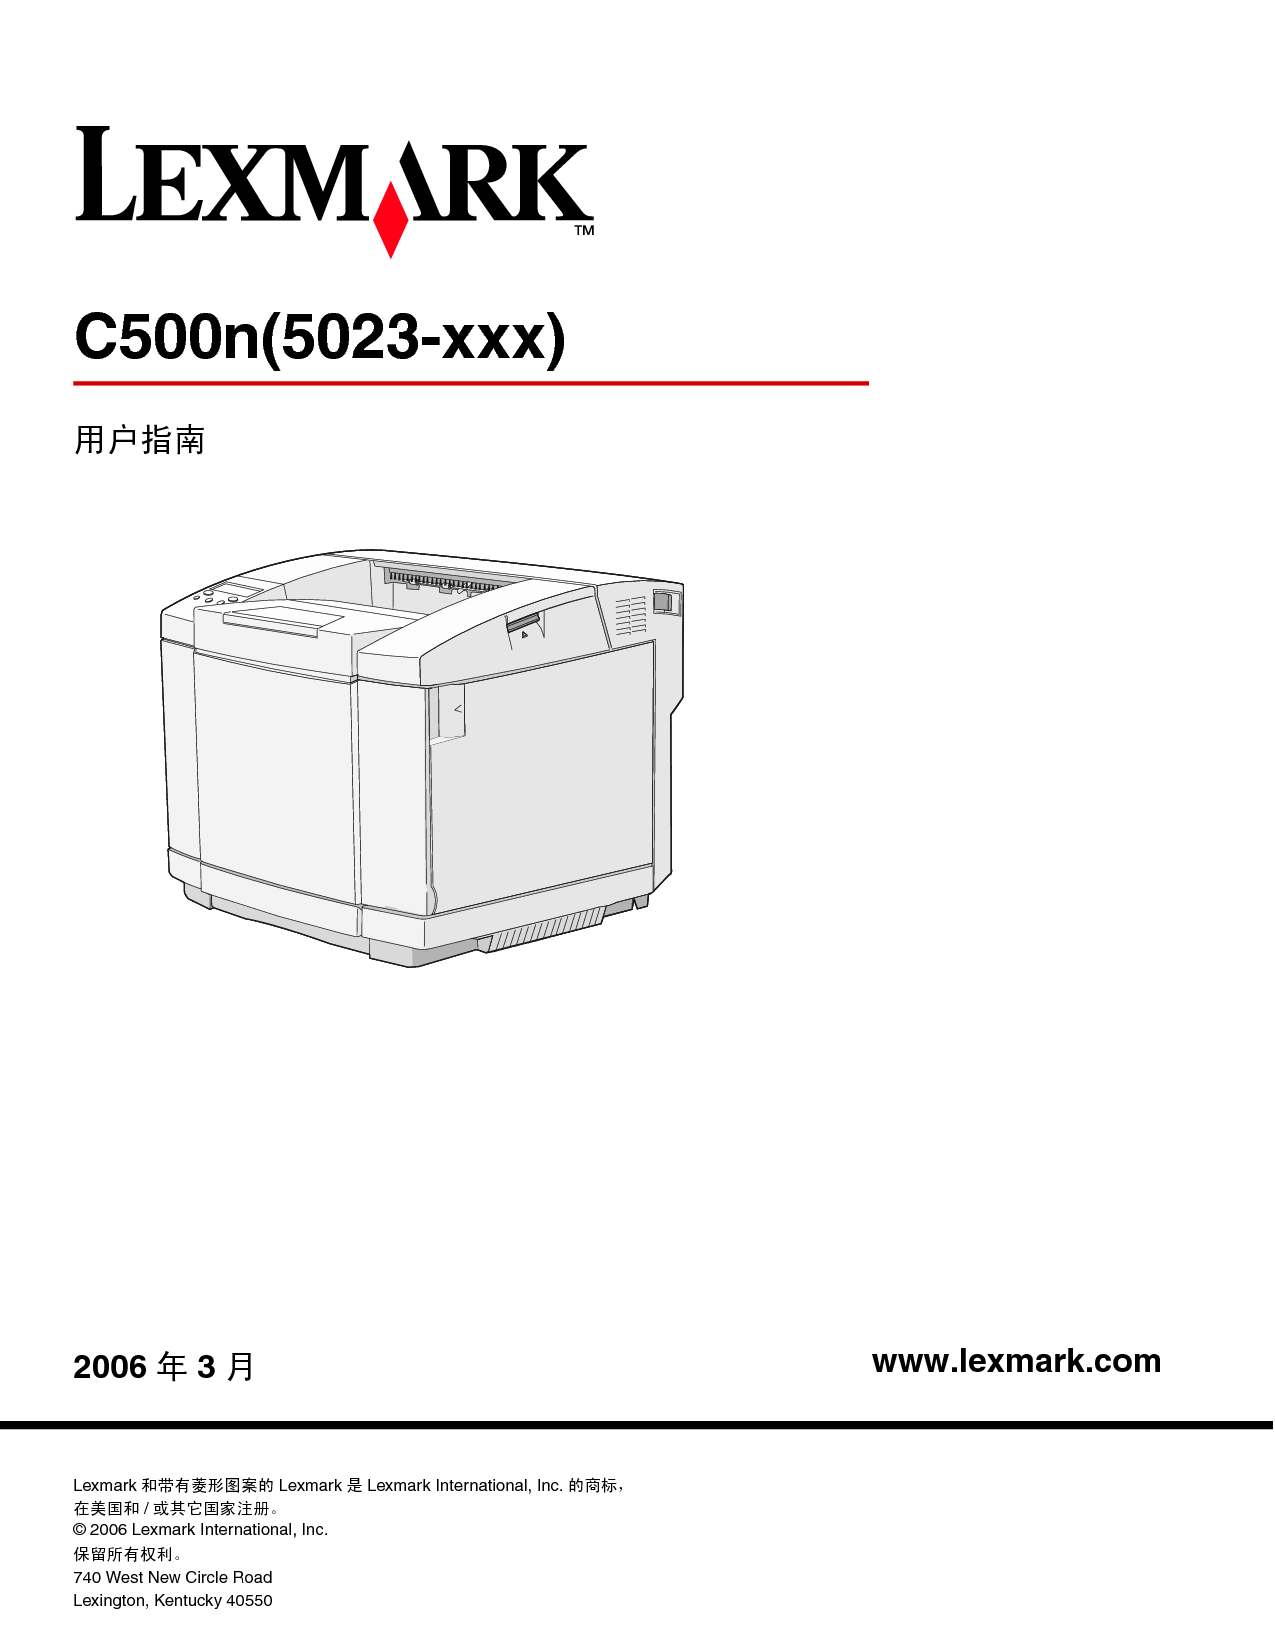 利盟 Lexmark C500n 使用手册 封面